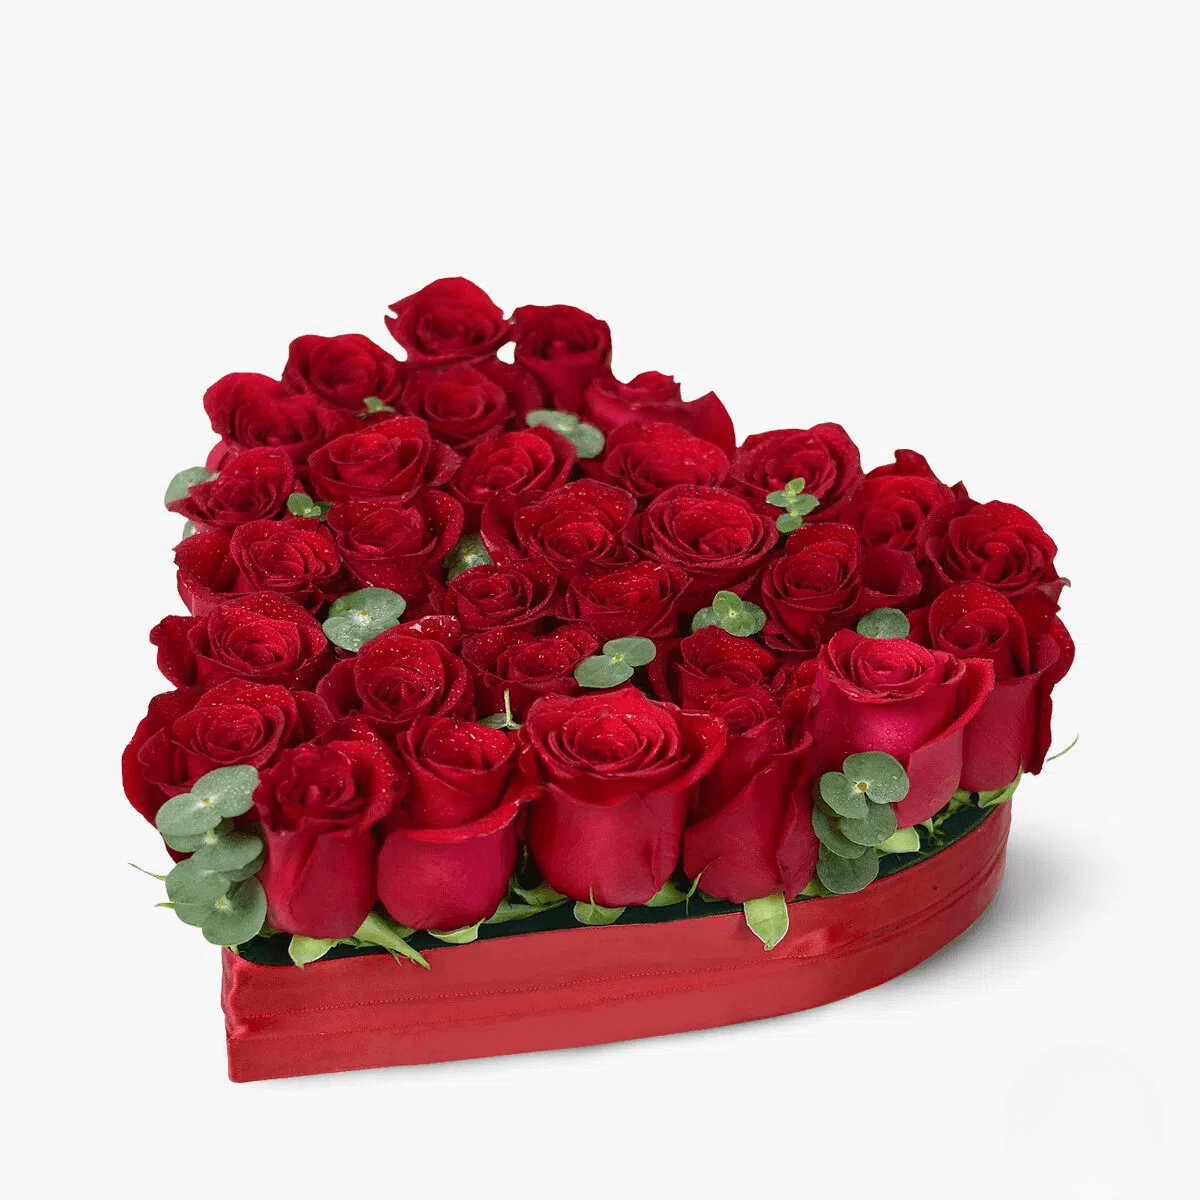 Aranjament in forma de inima din 31 trandafiri rosii – Standard Aranjament imagine 2022